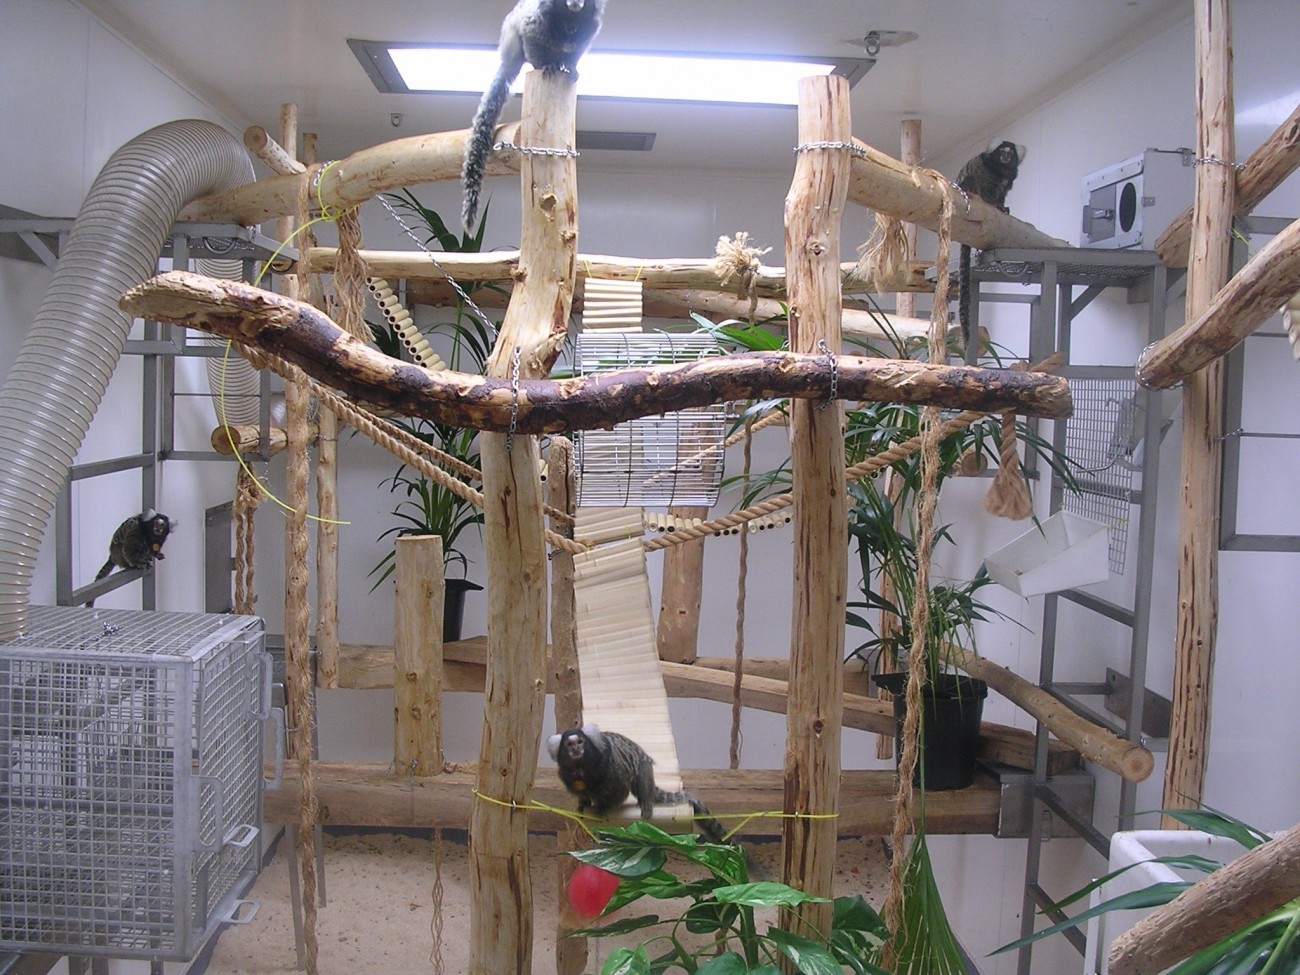 一群生活在实验室里的狨猴。四只绒猴栖息在木树枝和金属框架上，它们占据了可用的房间空间。房间里的其他浓缩物包括悬挂的绳索和植物。天花板上有人工照明，地板上有木屑。左手边是一个小网笼，用来捕捉动物，还有一个软管，可以让猴子进入实验室屋顶的户外围栏。